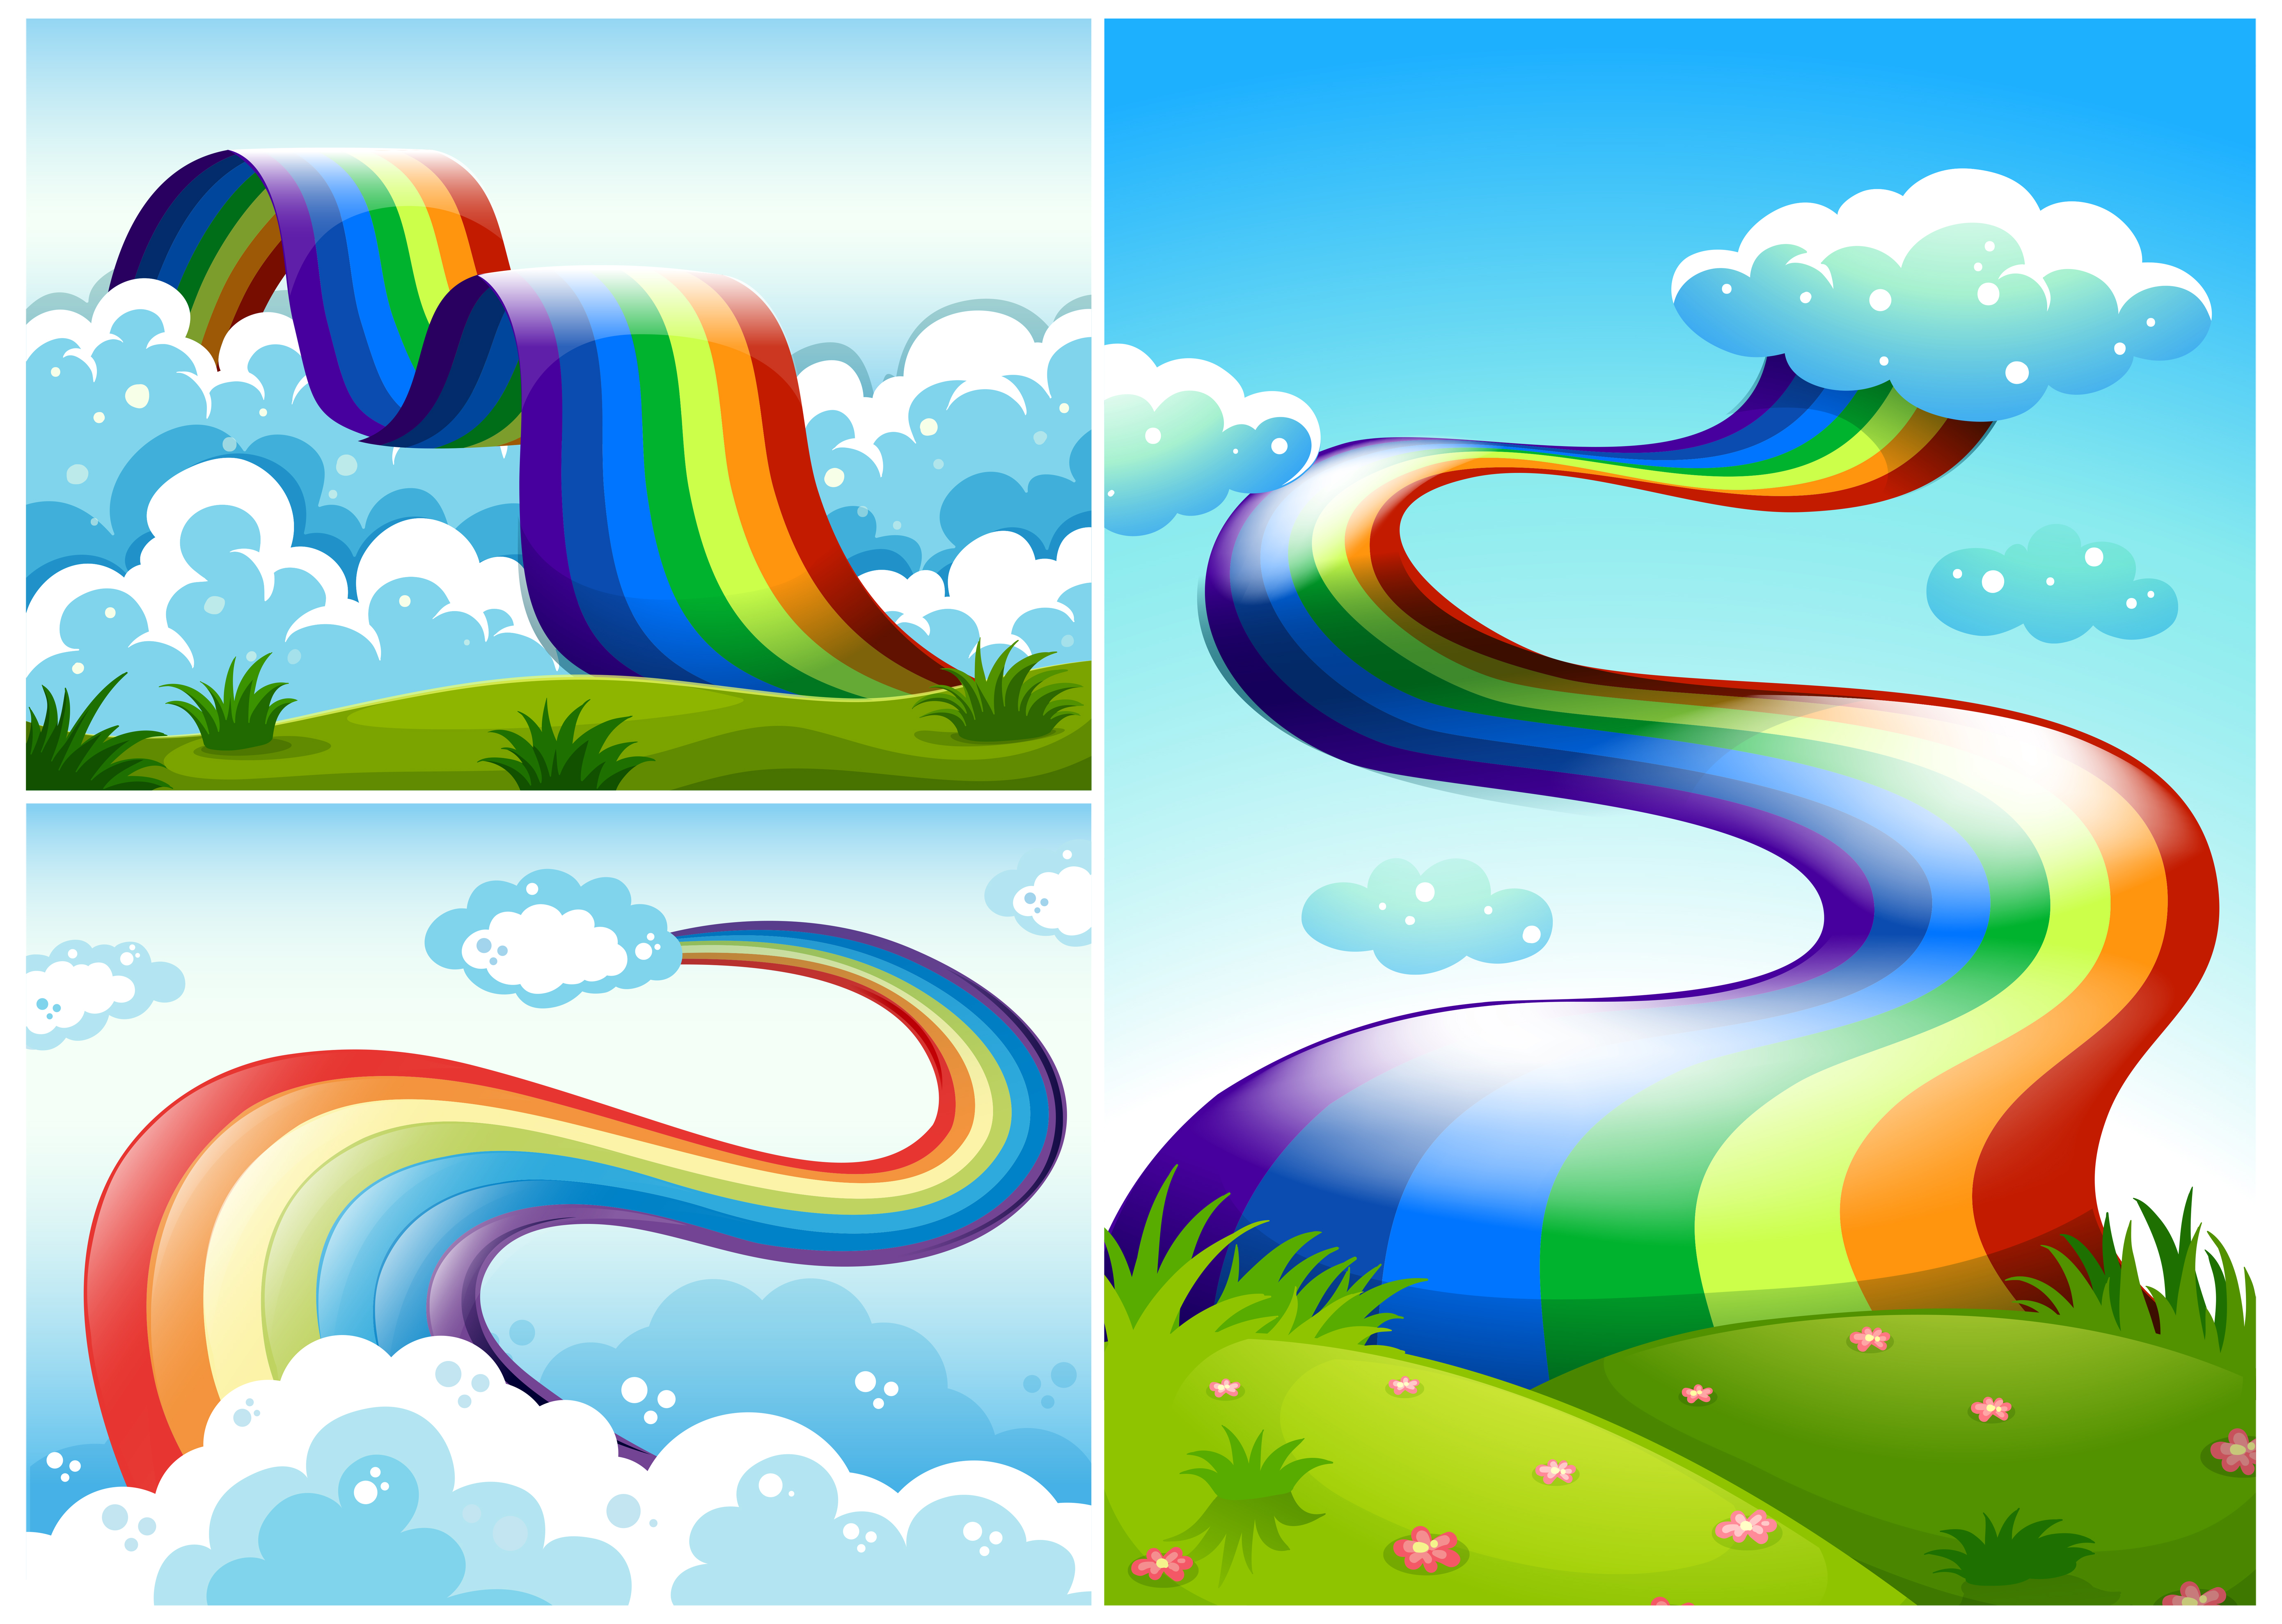 A Set Of Rainbow Road Download Free Vectors Clipart Graphics Vector Art